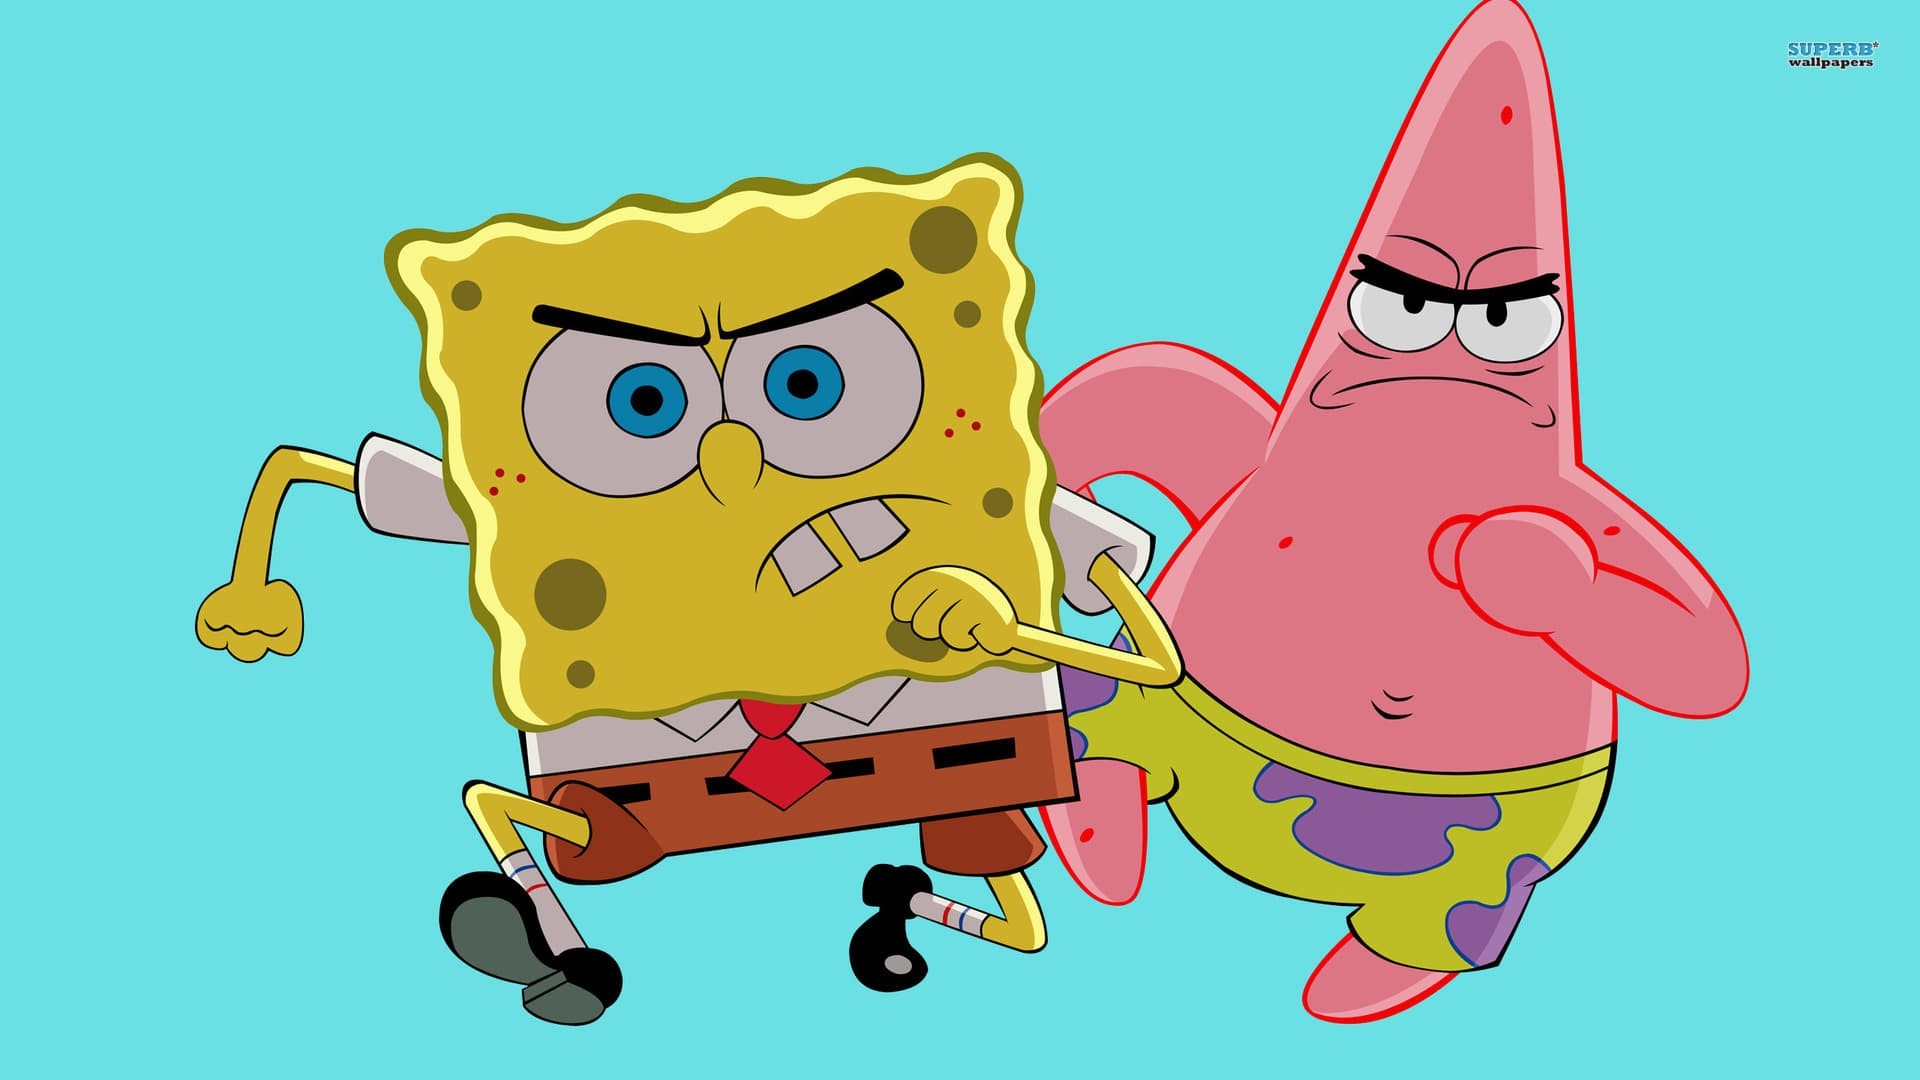 Spongebob And Patrick Wallpaper Image